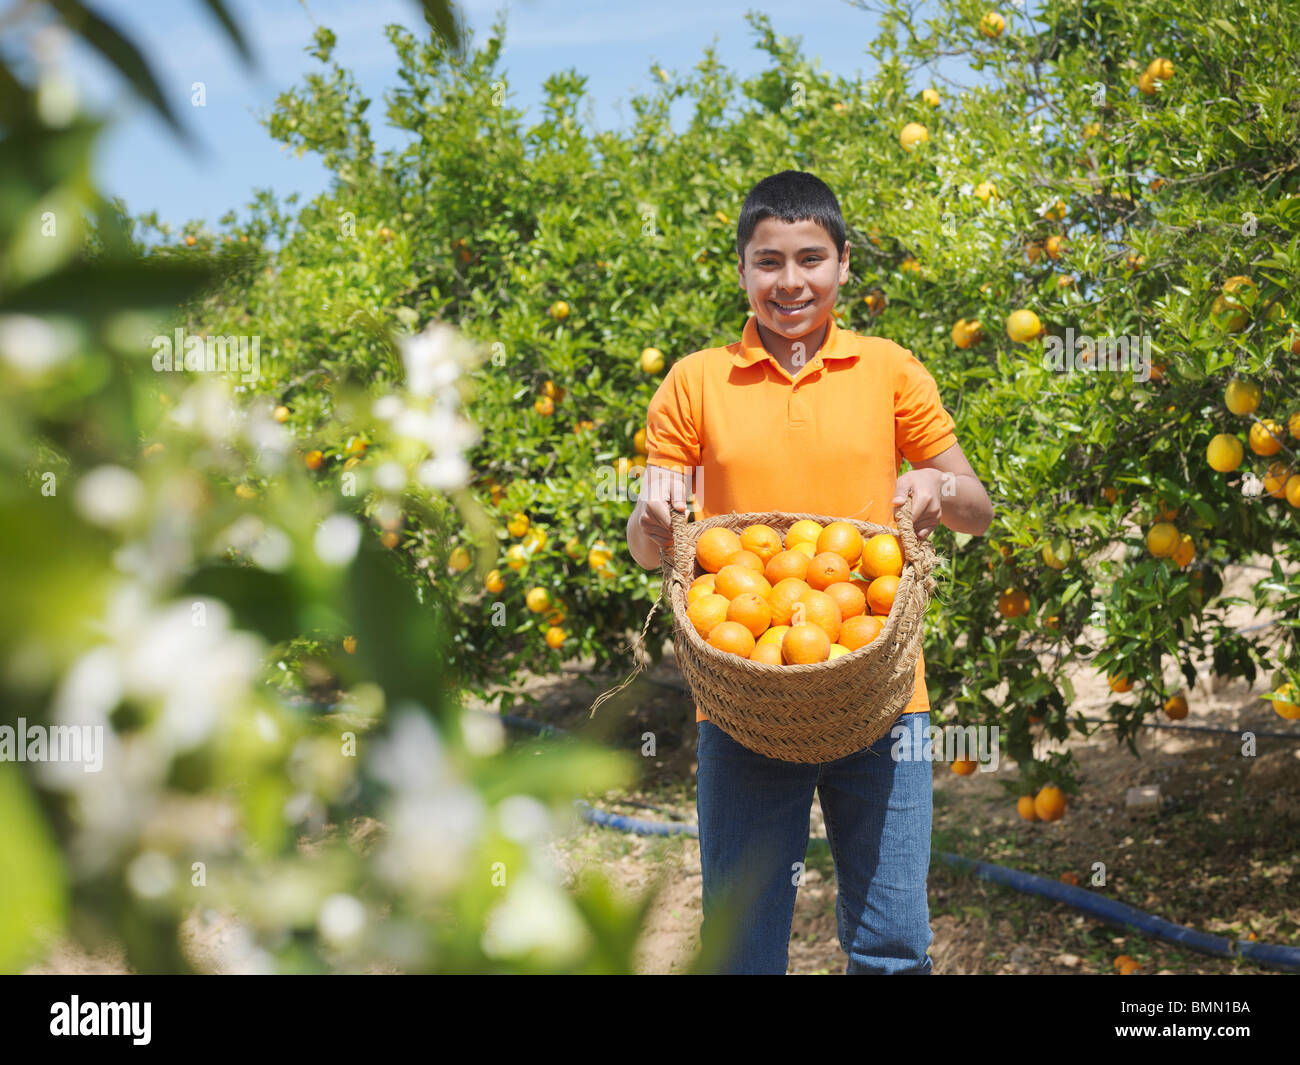 Boy showing panier plein d'oranges Banque D'Images